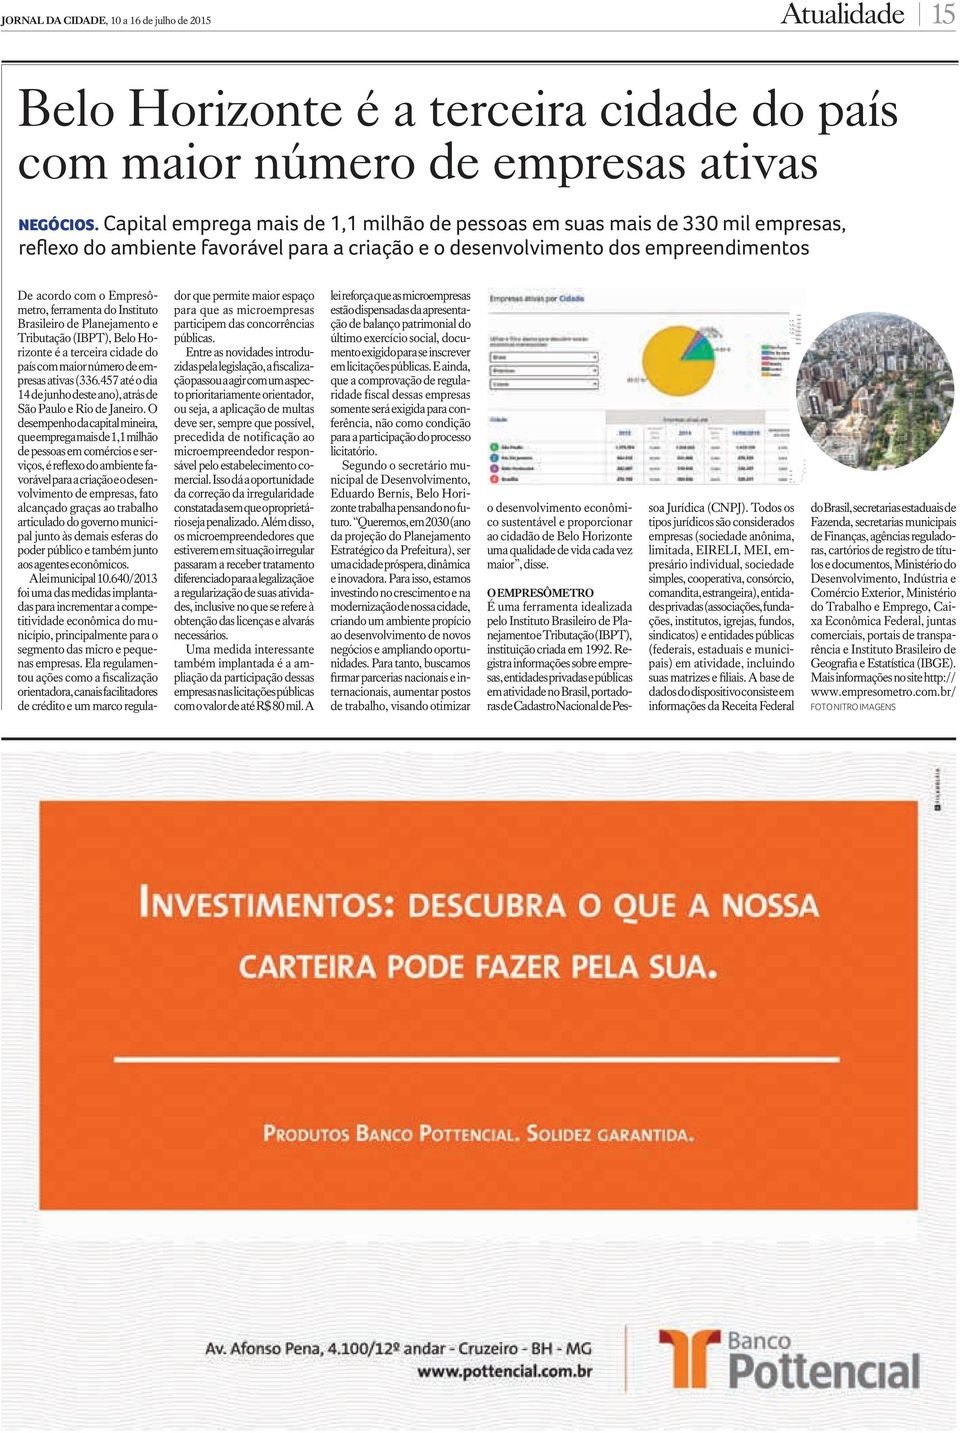 ferramenta do Instituto Brasileiro de Planejamento e Tributação (IBPT), Belo Horizonte é a terceira cidade do país com maior número de empresas ativas (336.